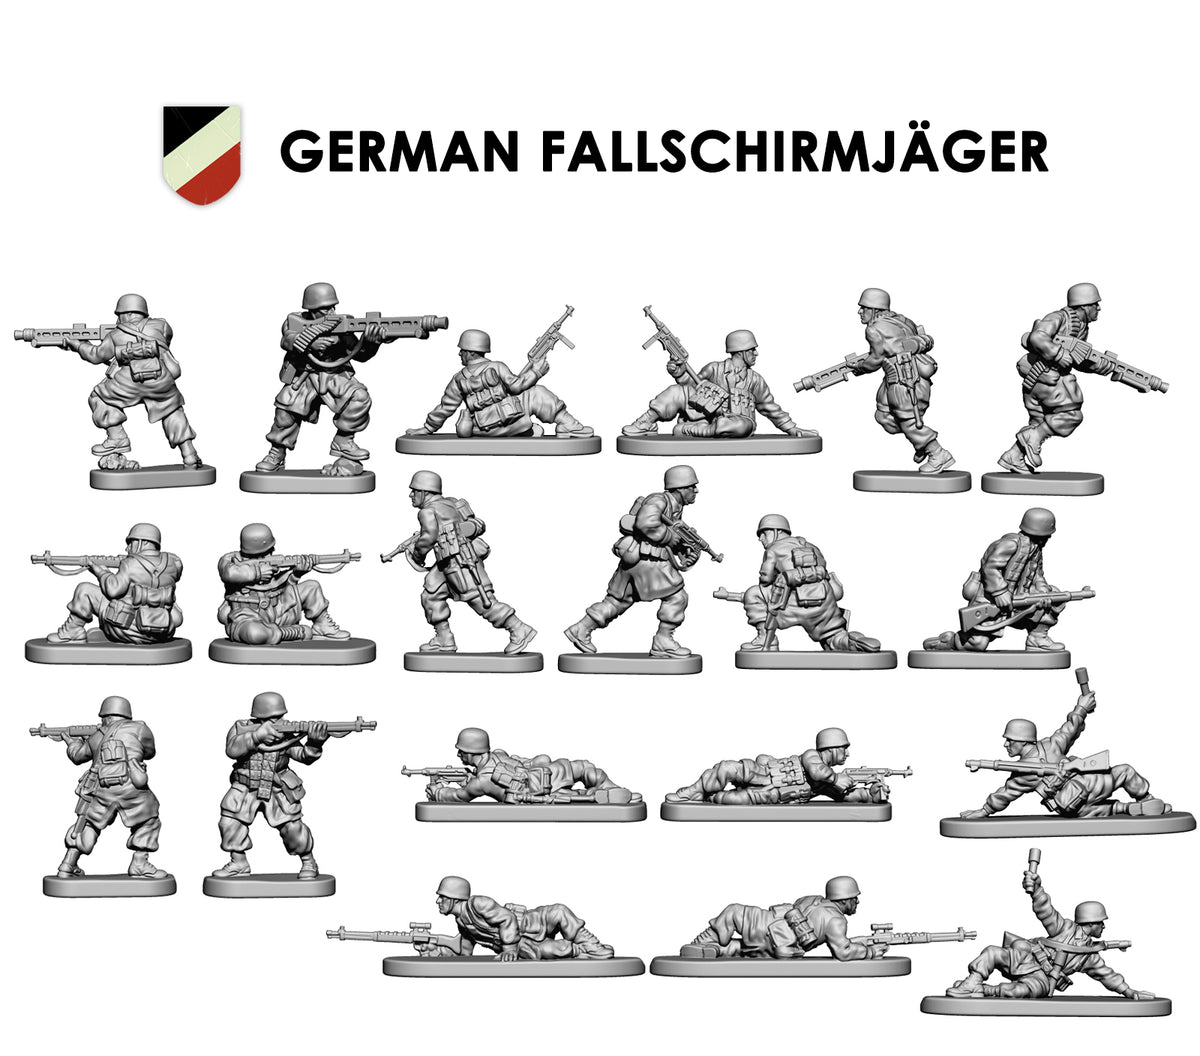 Немецкий Fallschirmjaeger